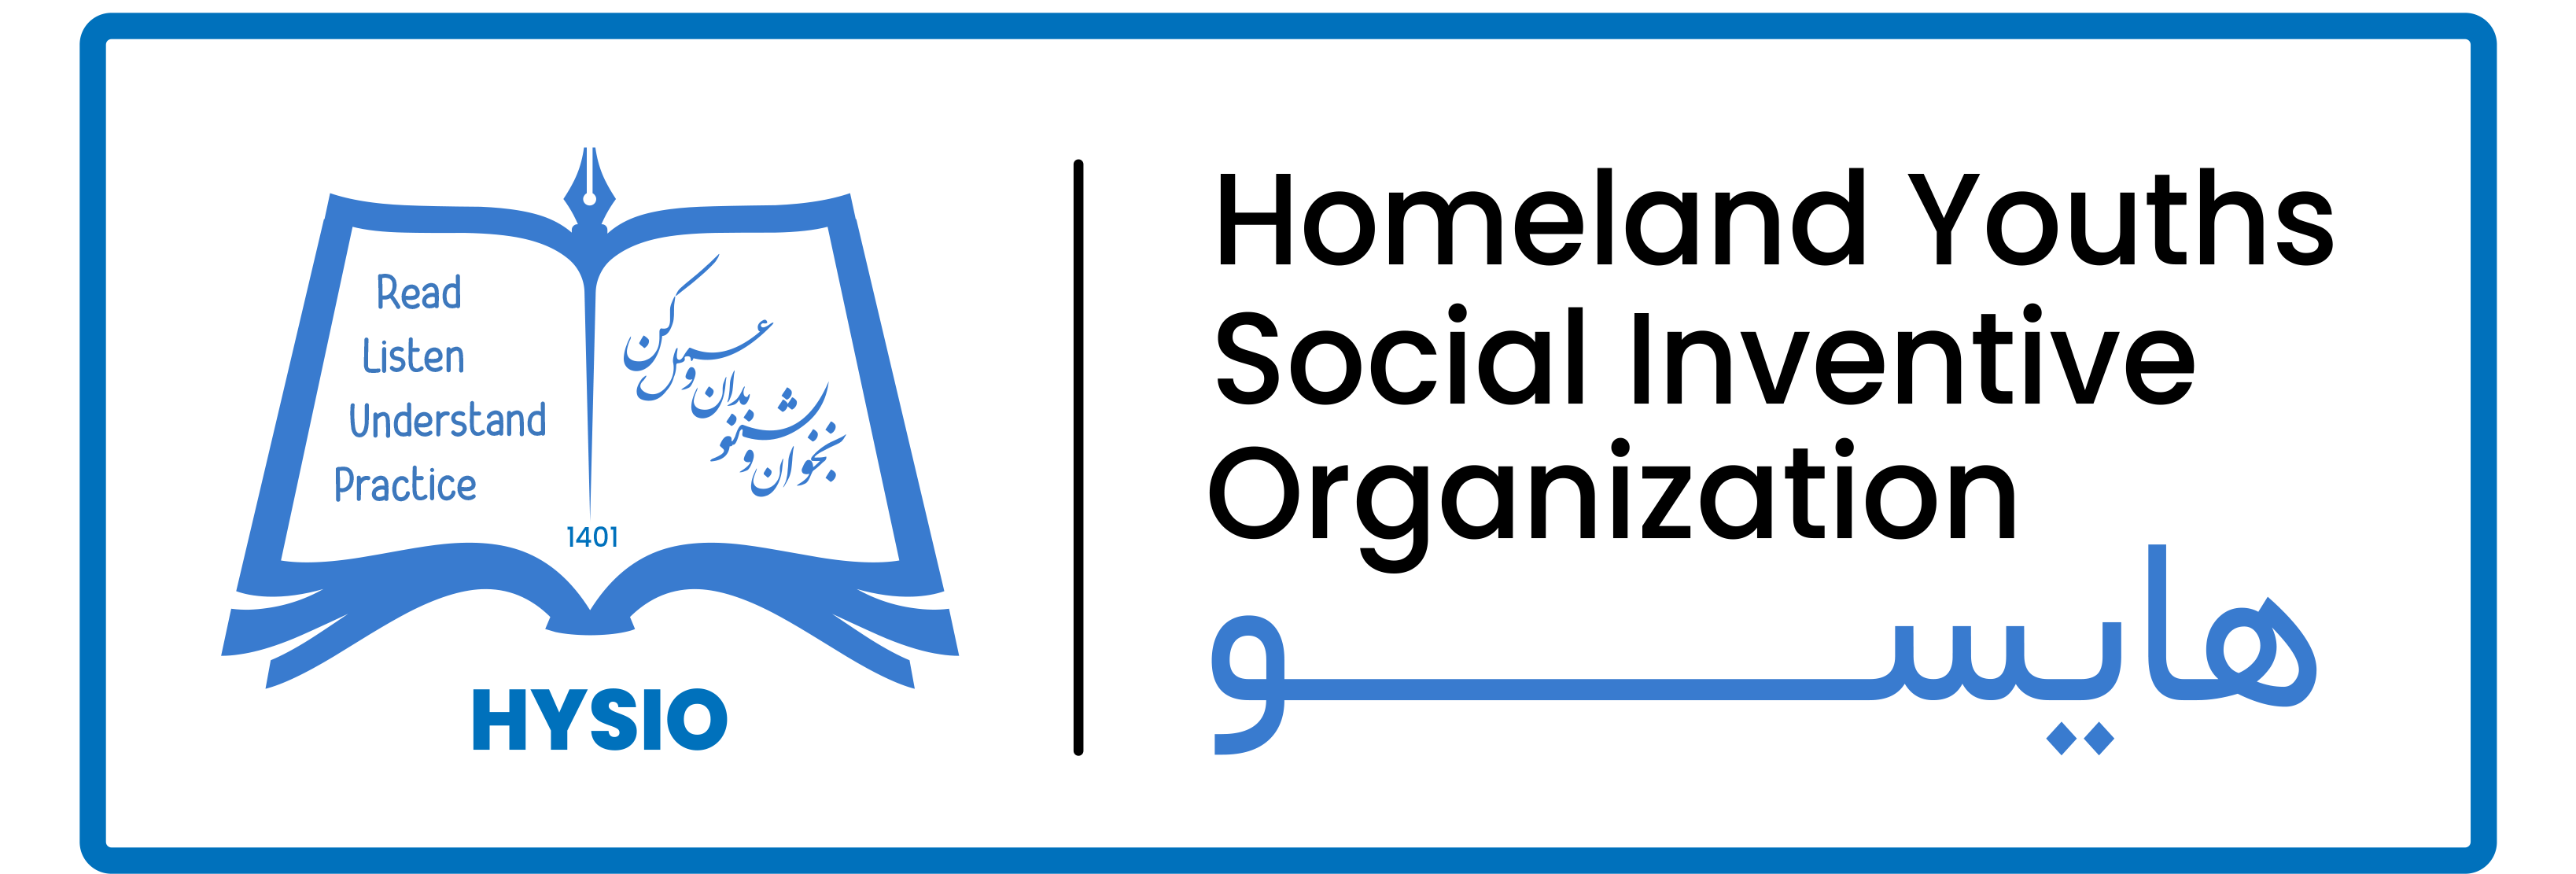 Homeland Youths Social Inventive Organization HYSIO